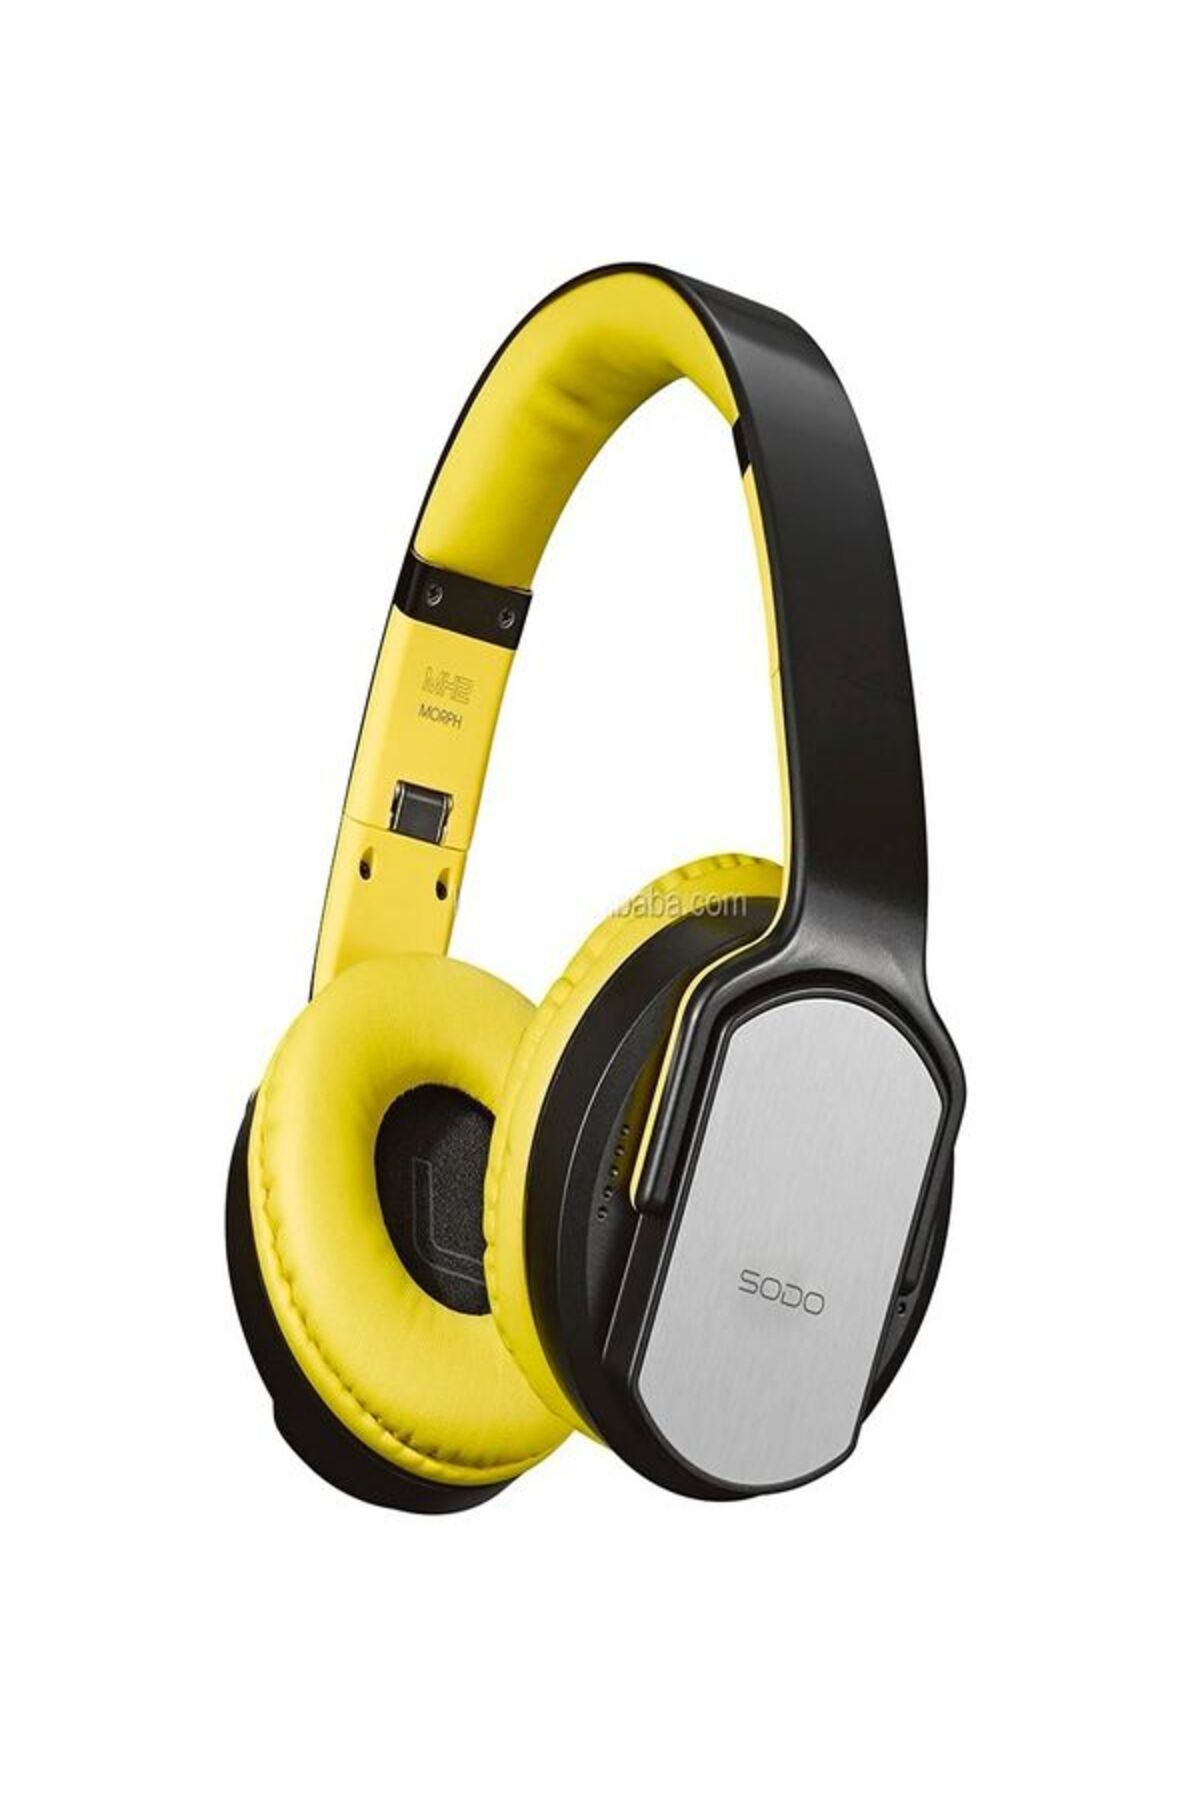 ÇELİKWORK Mh-12 NFC Kablosuz Kulaklık 2in1 Hoparlör Modu Hifi Stereo 5.0 Bluetooth Kulaklık Mikrofonlu